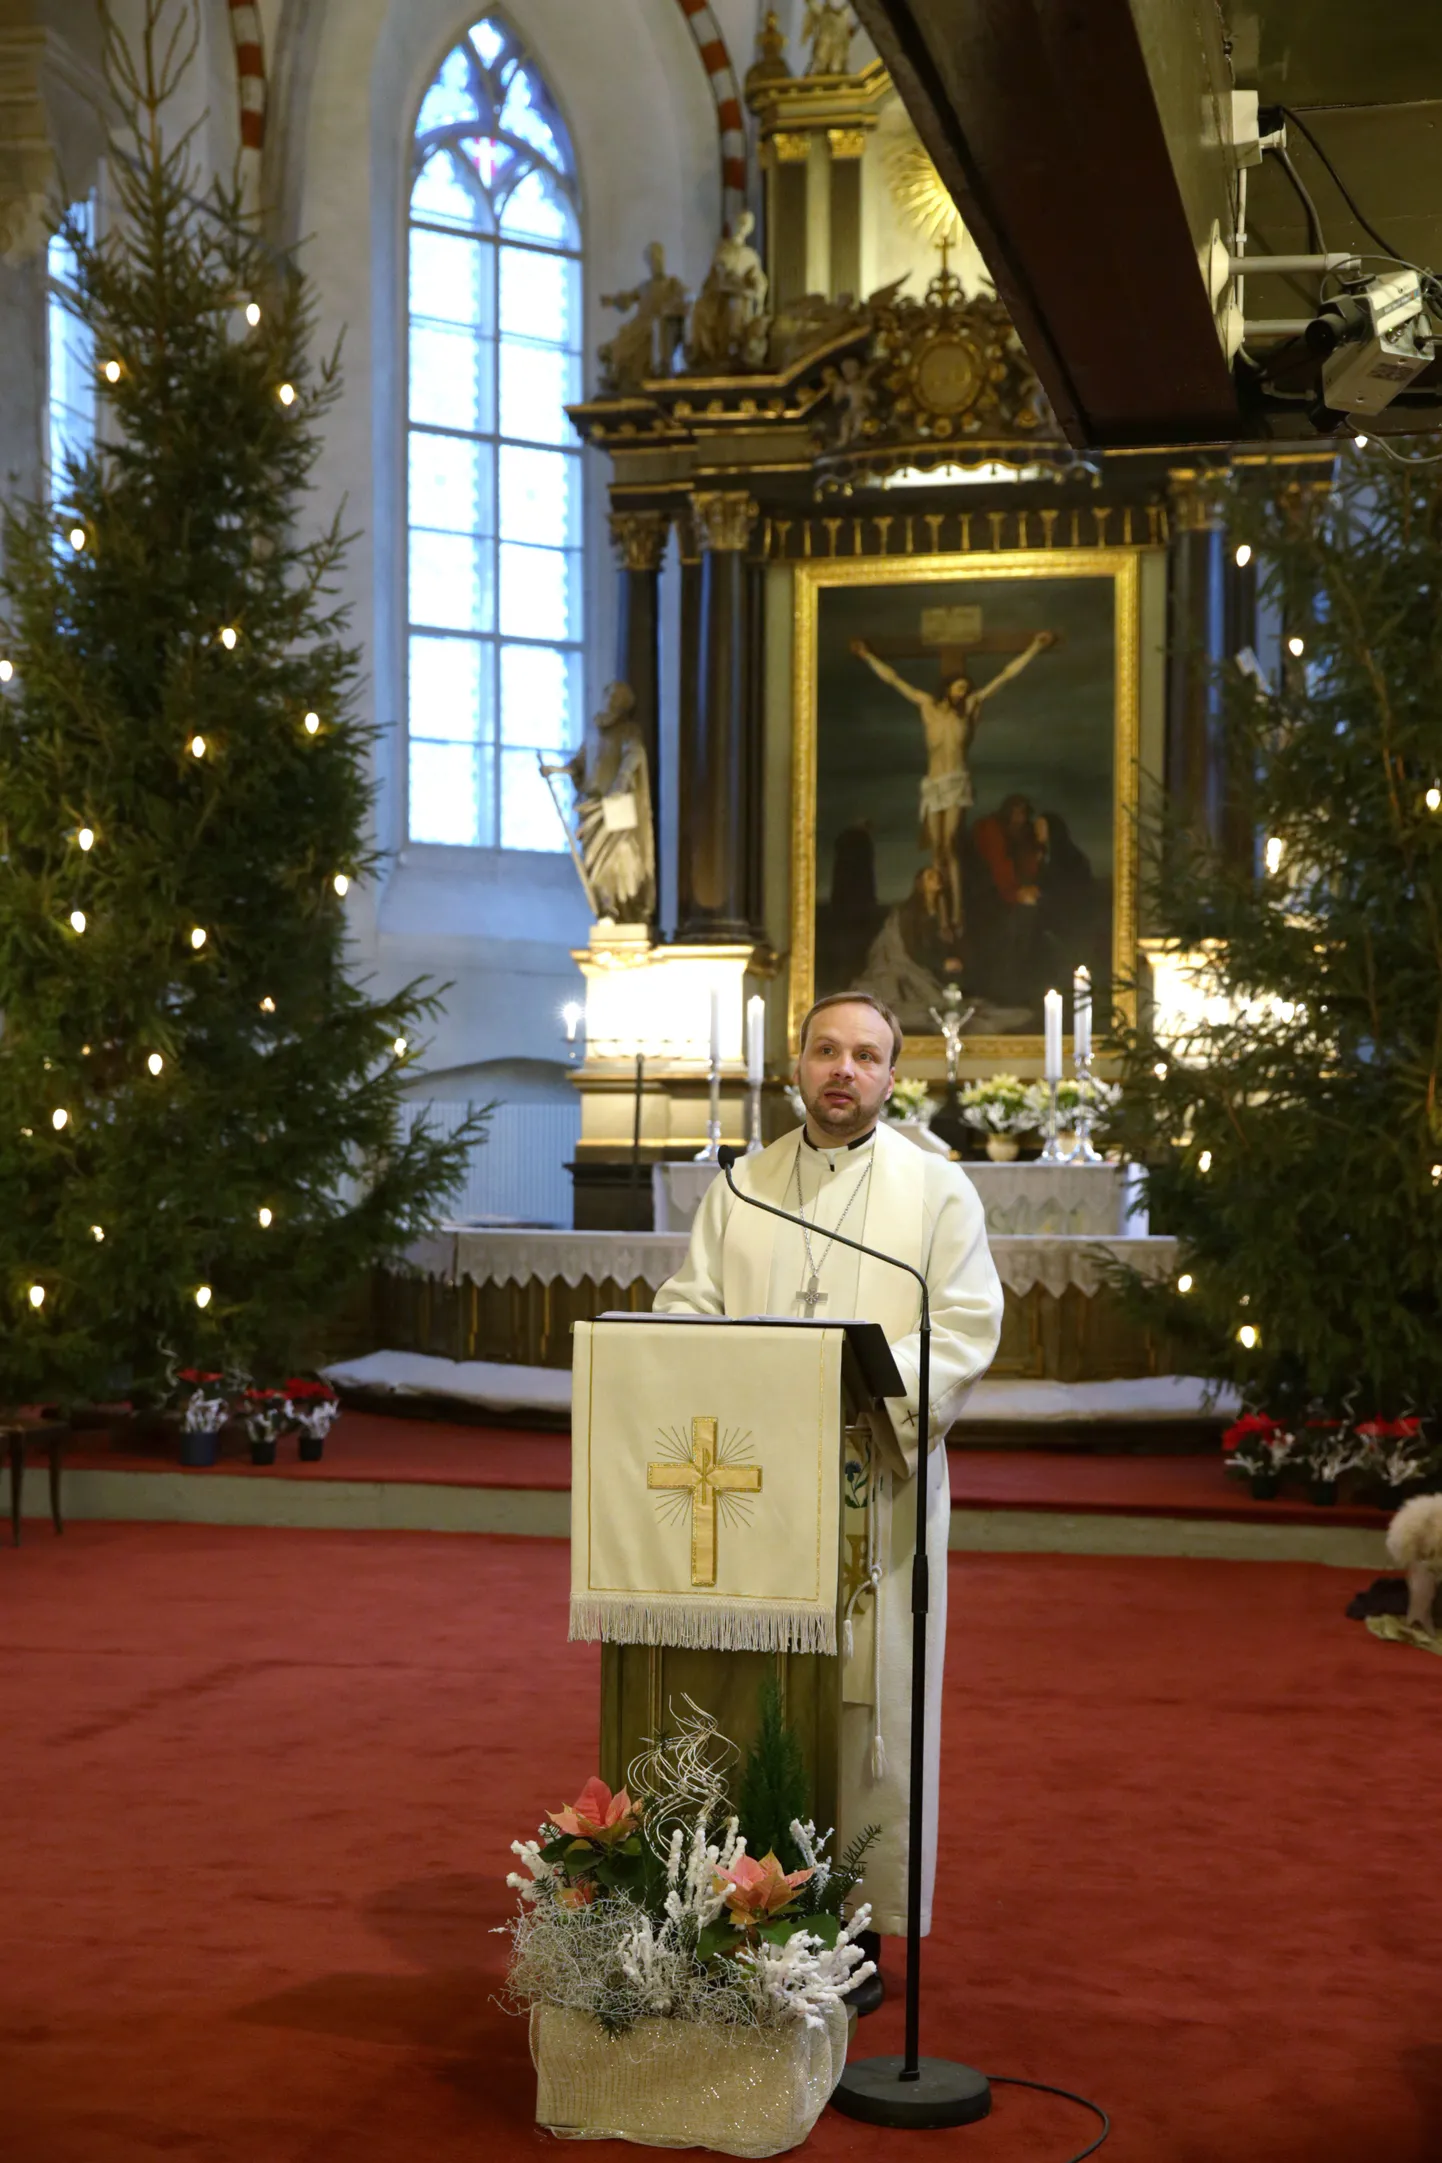 Esimese jõulupüha jumalateenistus Tallinna Piiskoplikus Toomkirikus. Arho Tuhkru.